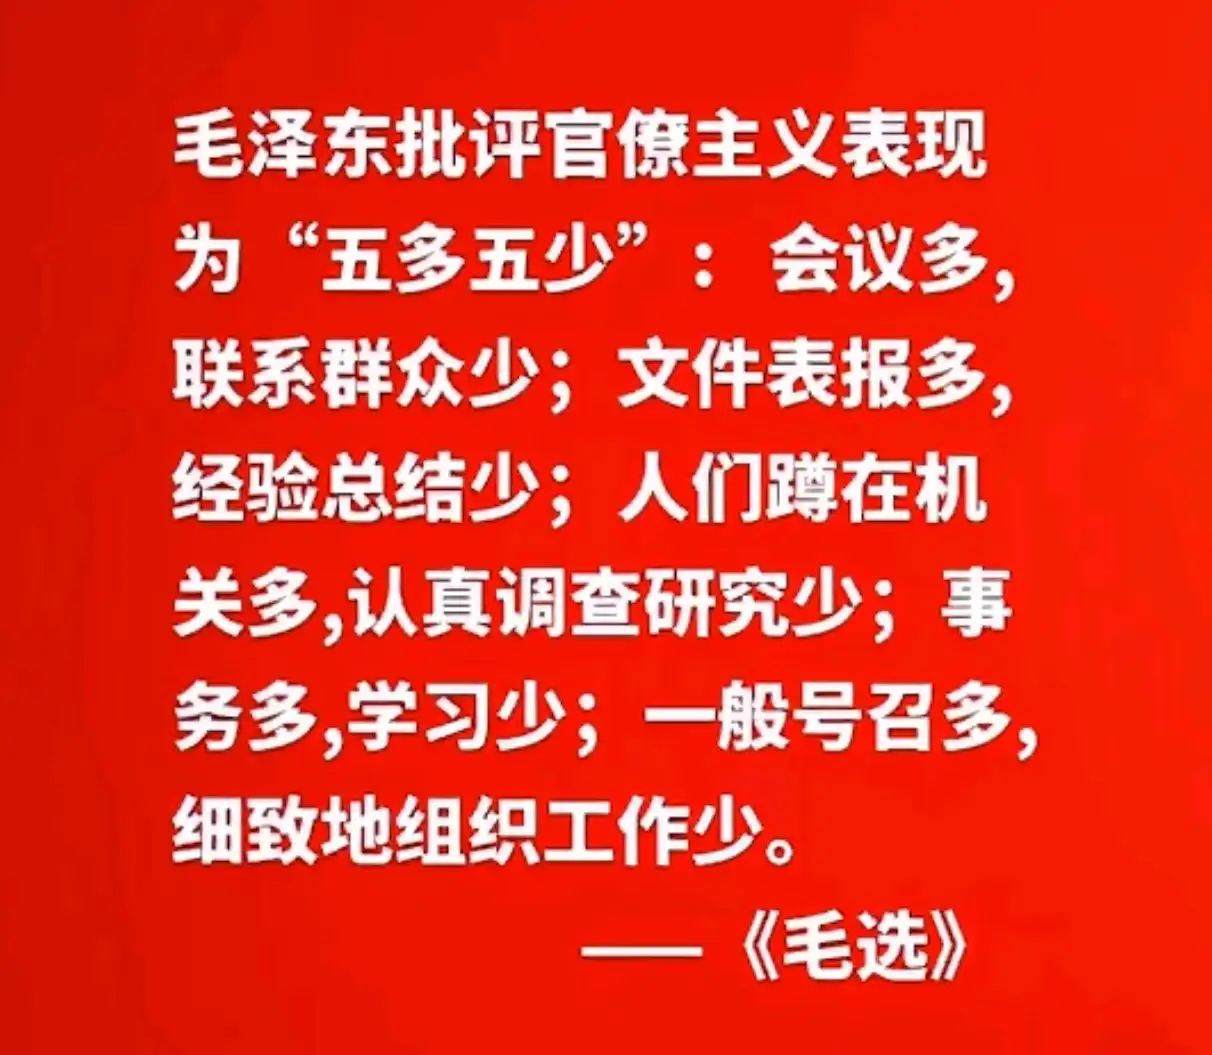 毛泽东批评官僚主义表现为五多五少